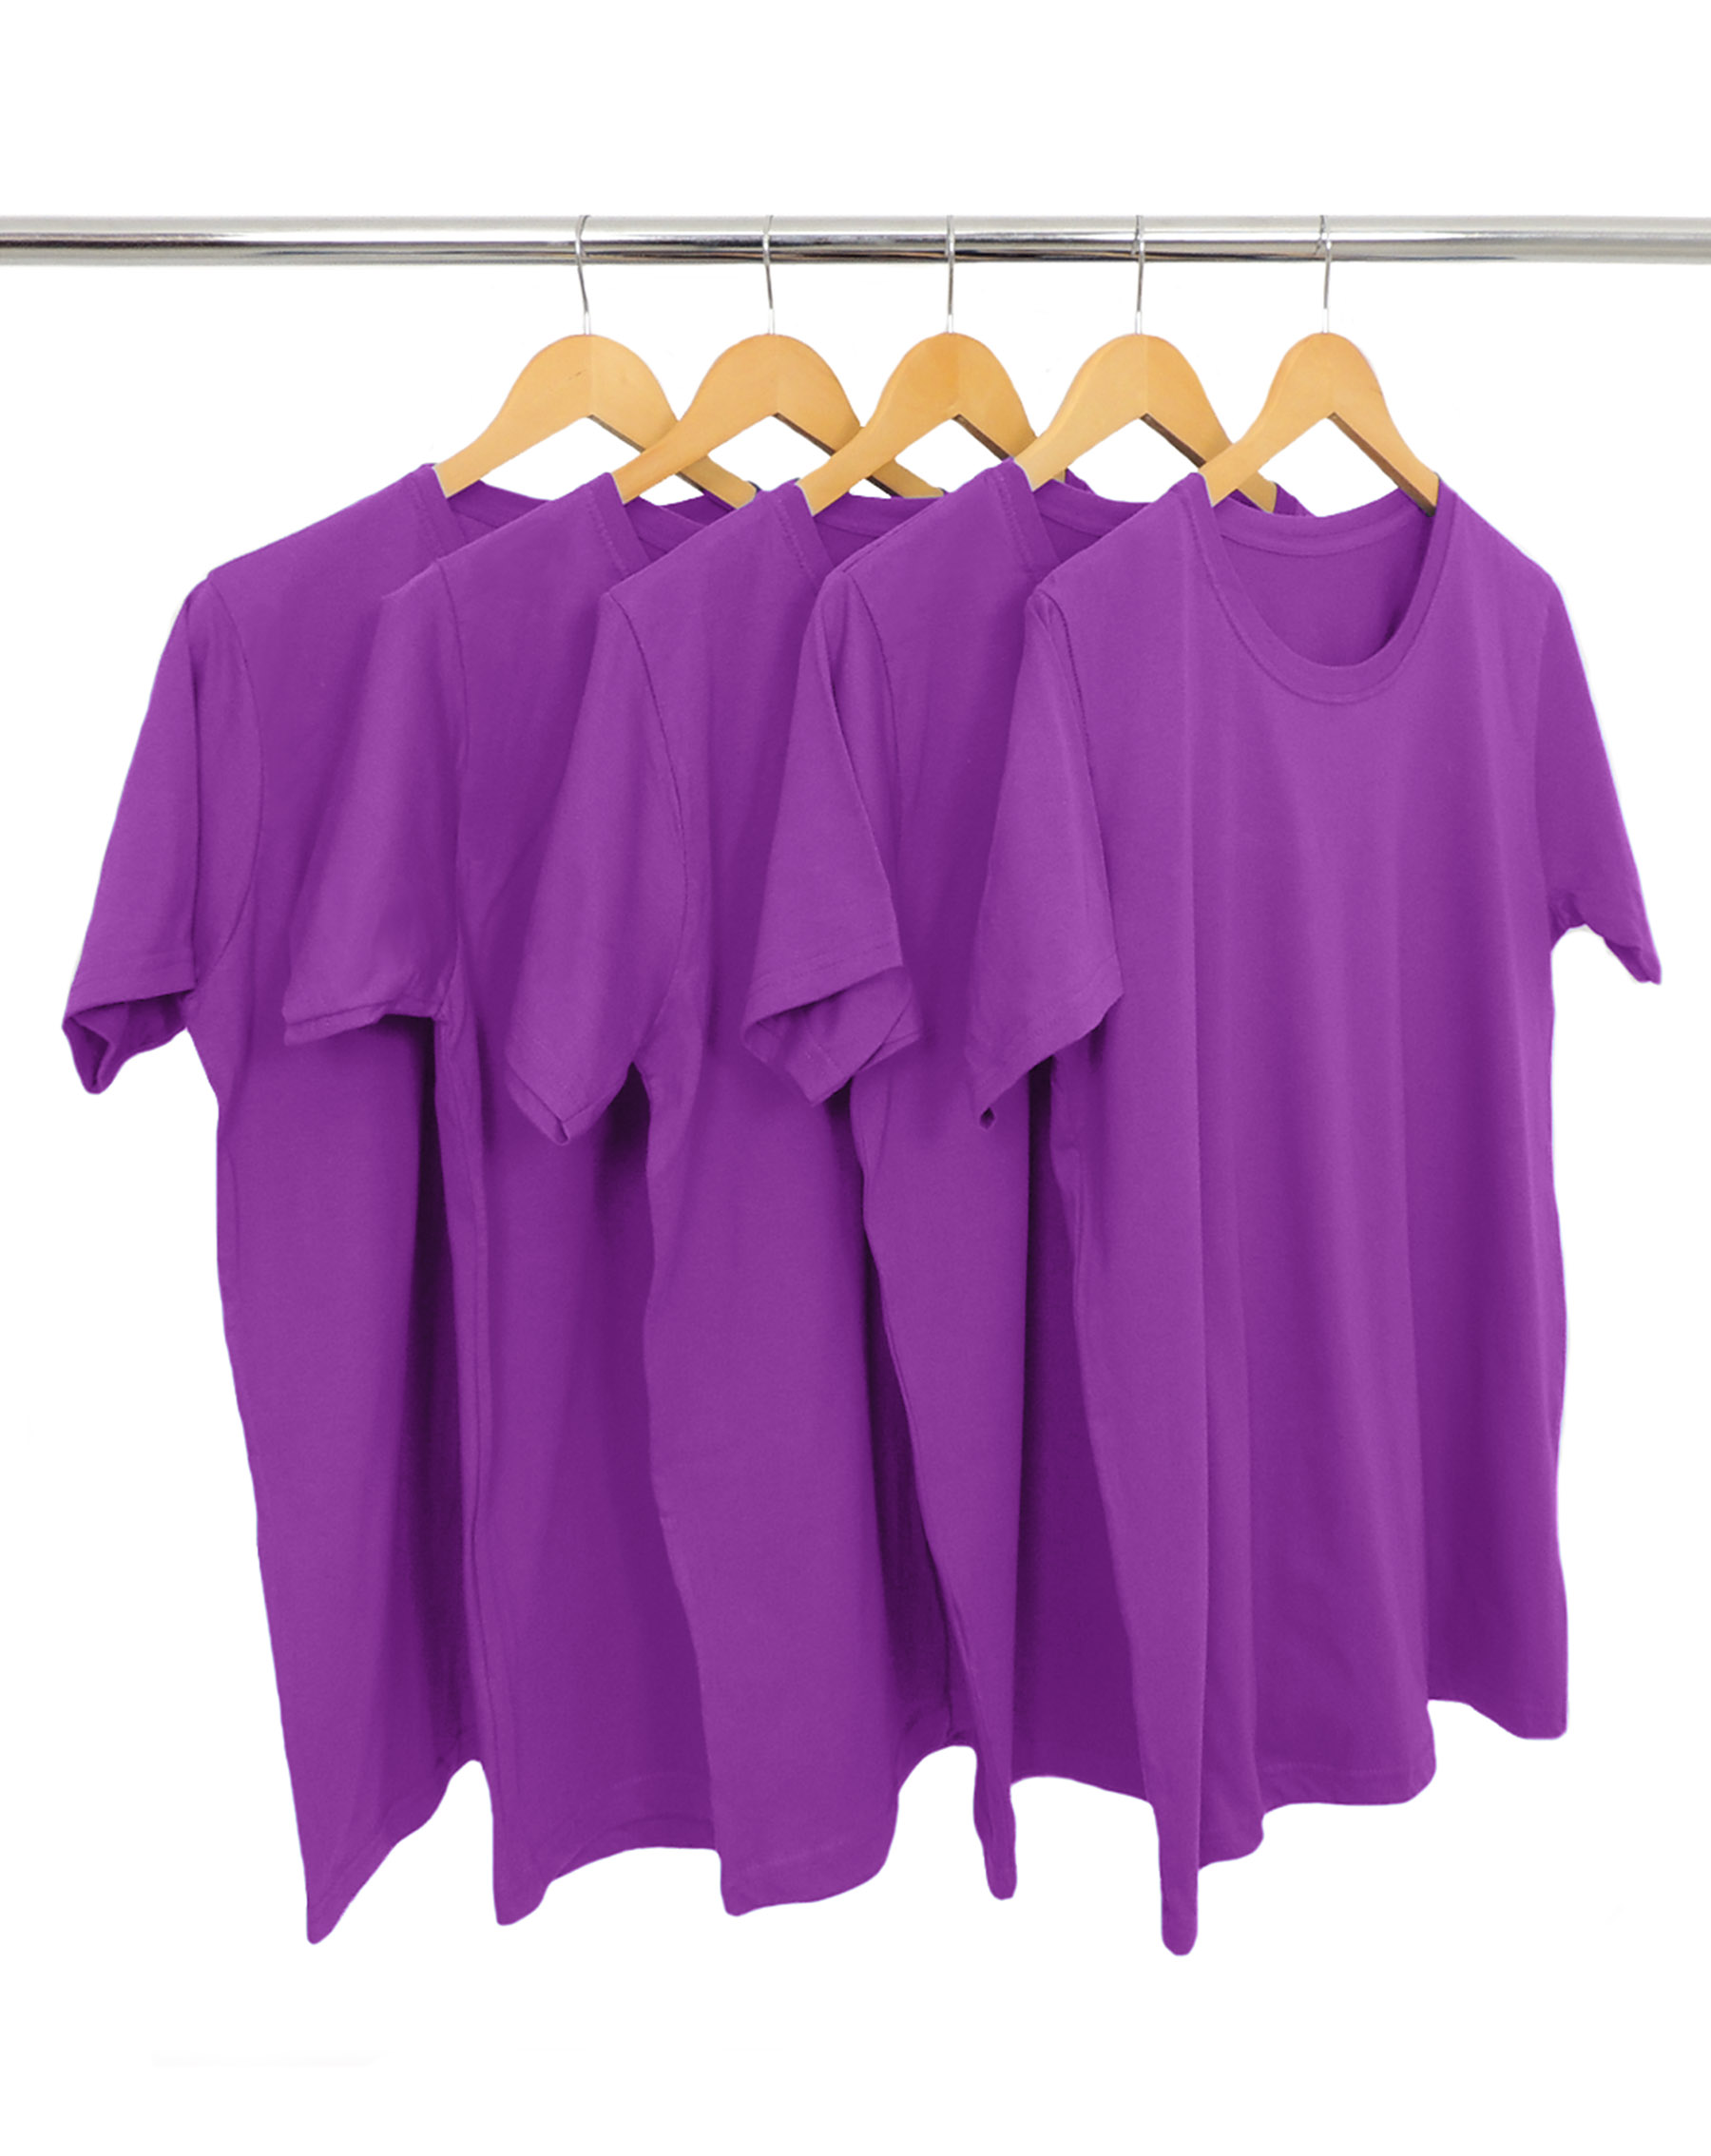 KIT 5 Camisetas de Algodão Premium Roxas